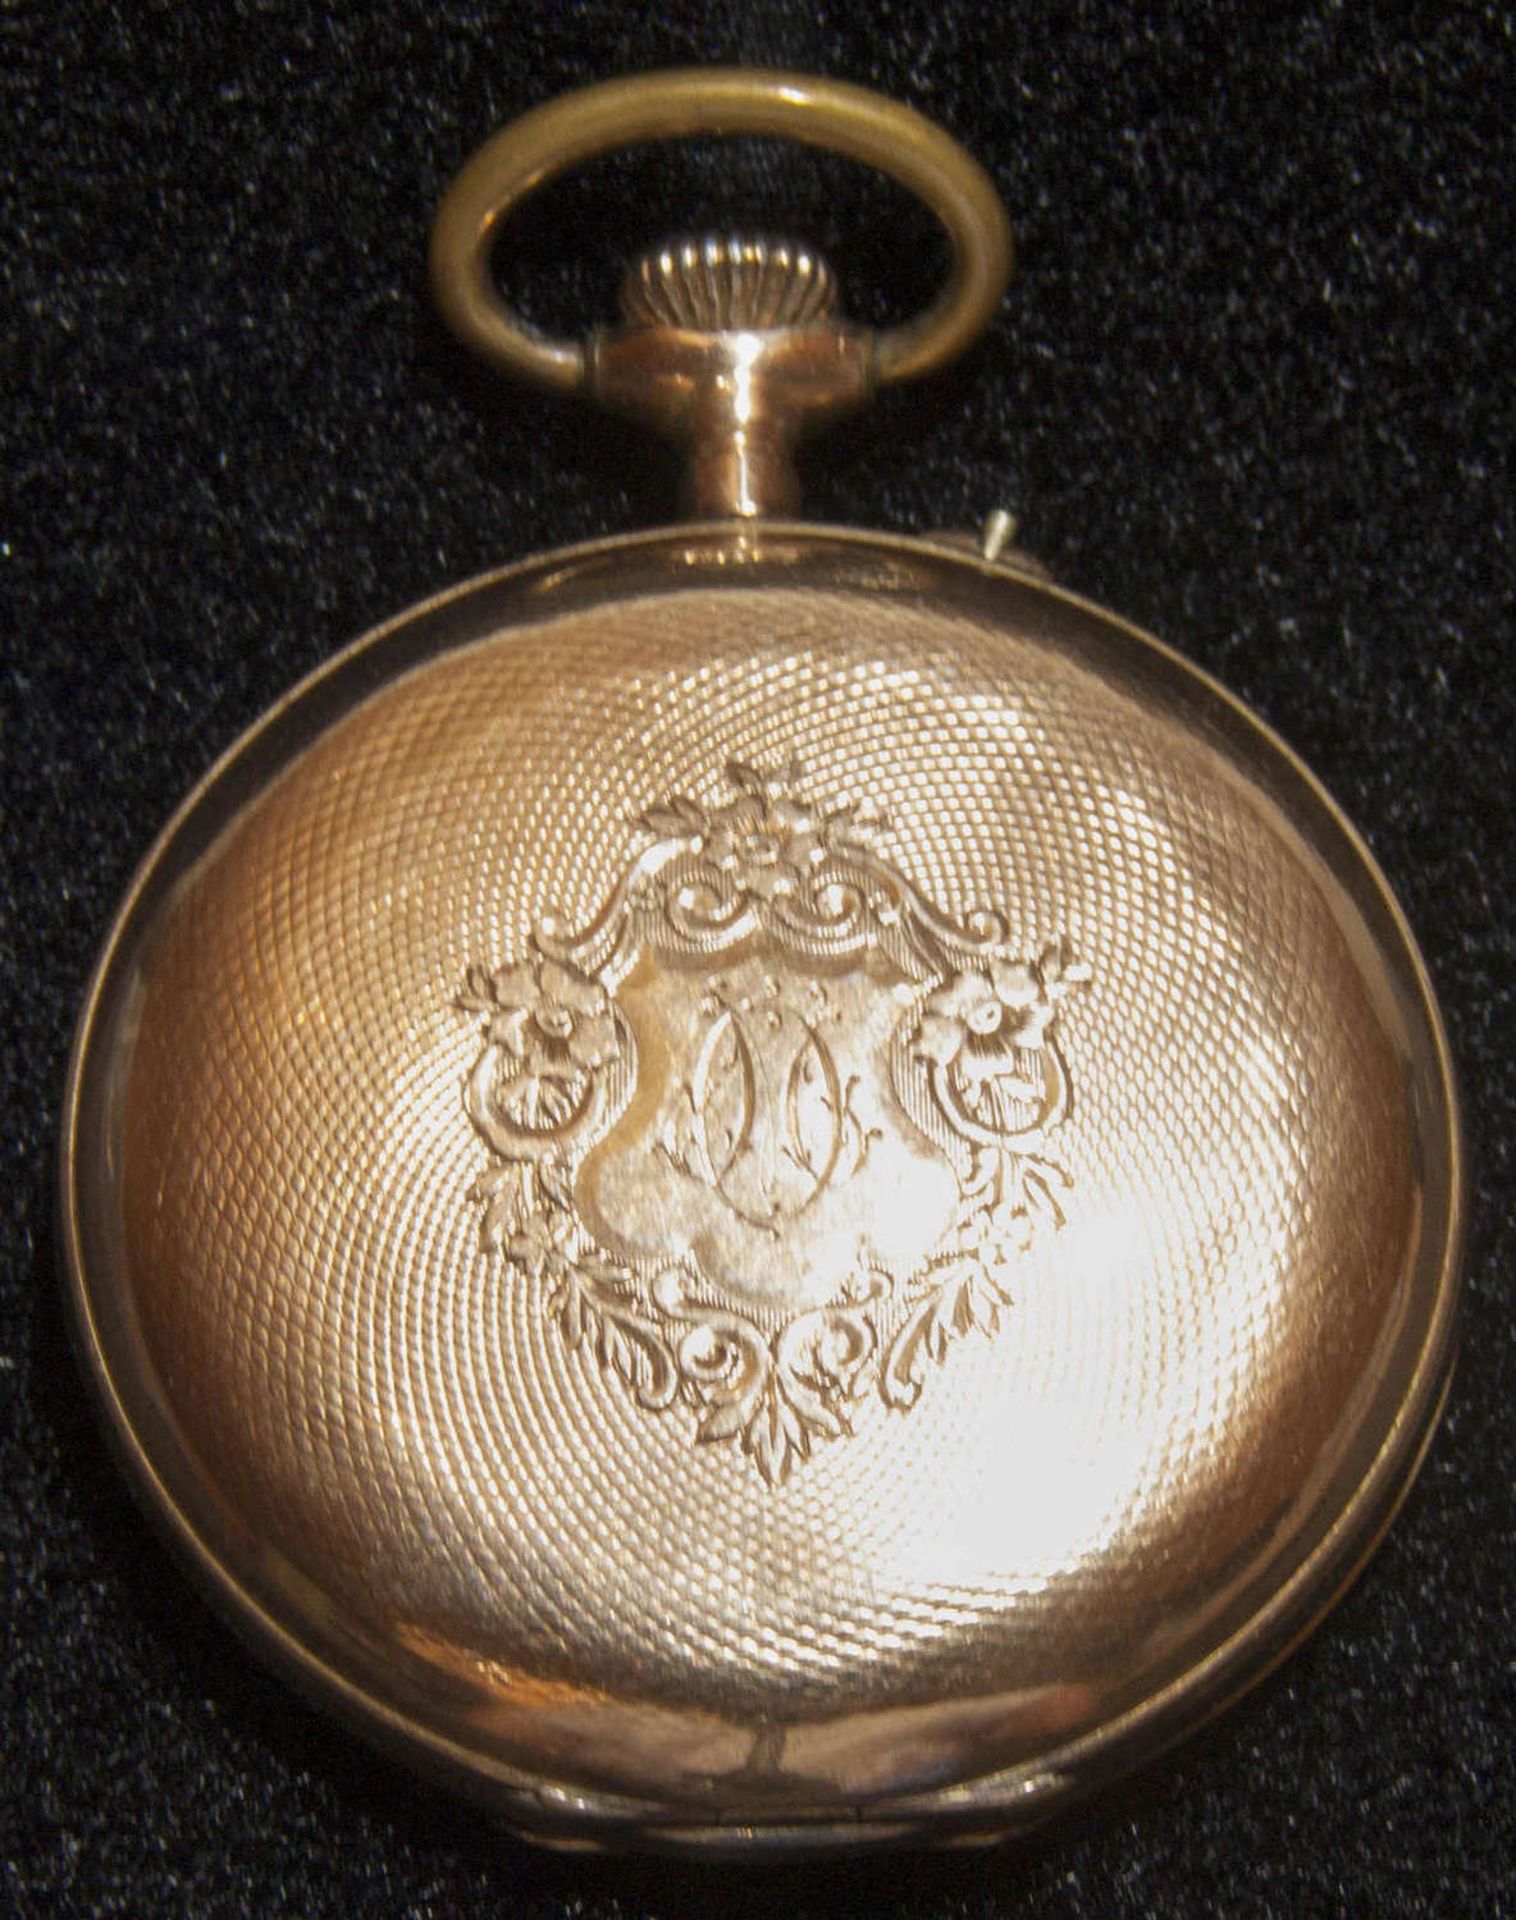 Gold - Taschenuhr von ANCRE. Gold 585. Zwei Deckel mit Goldpunze, Innendeckel Metall. Schriftzug